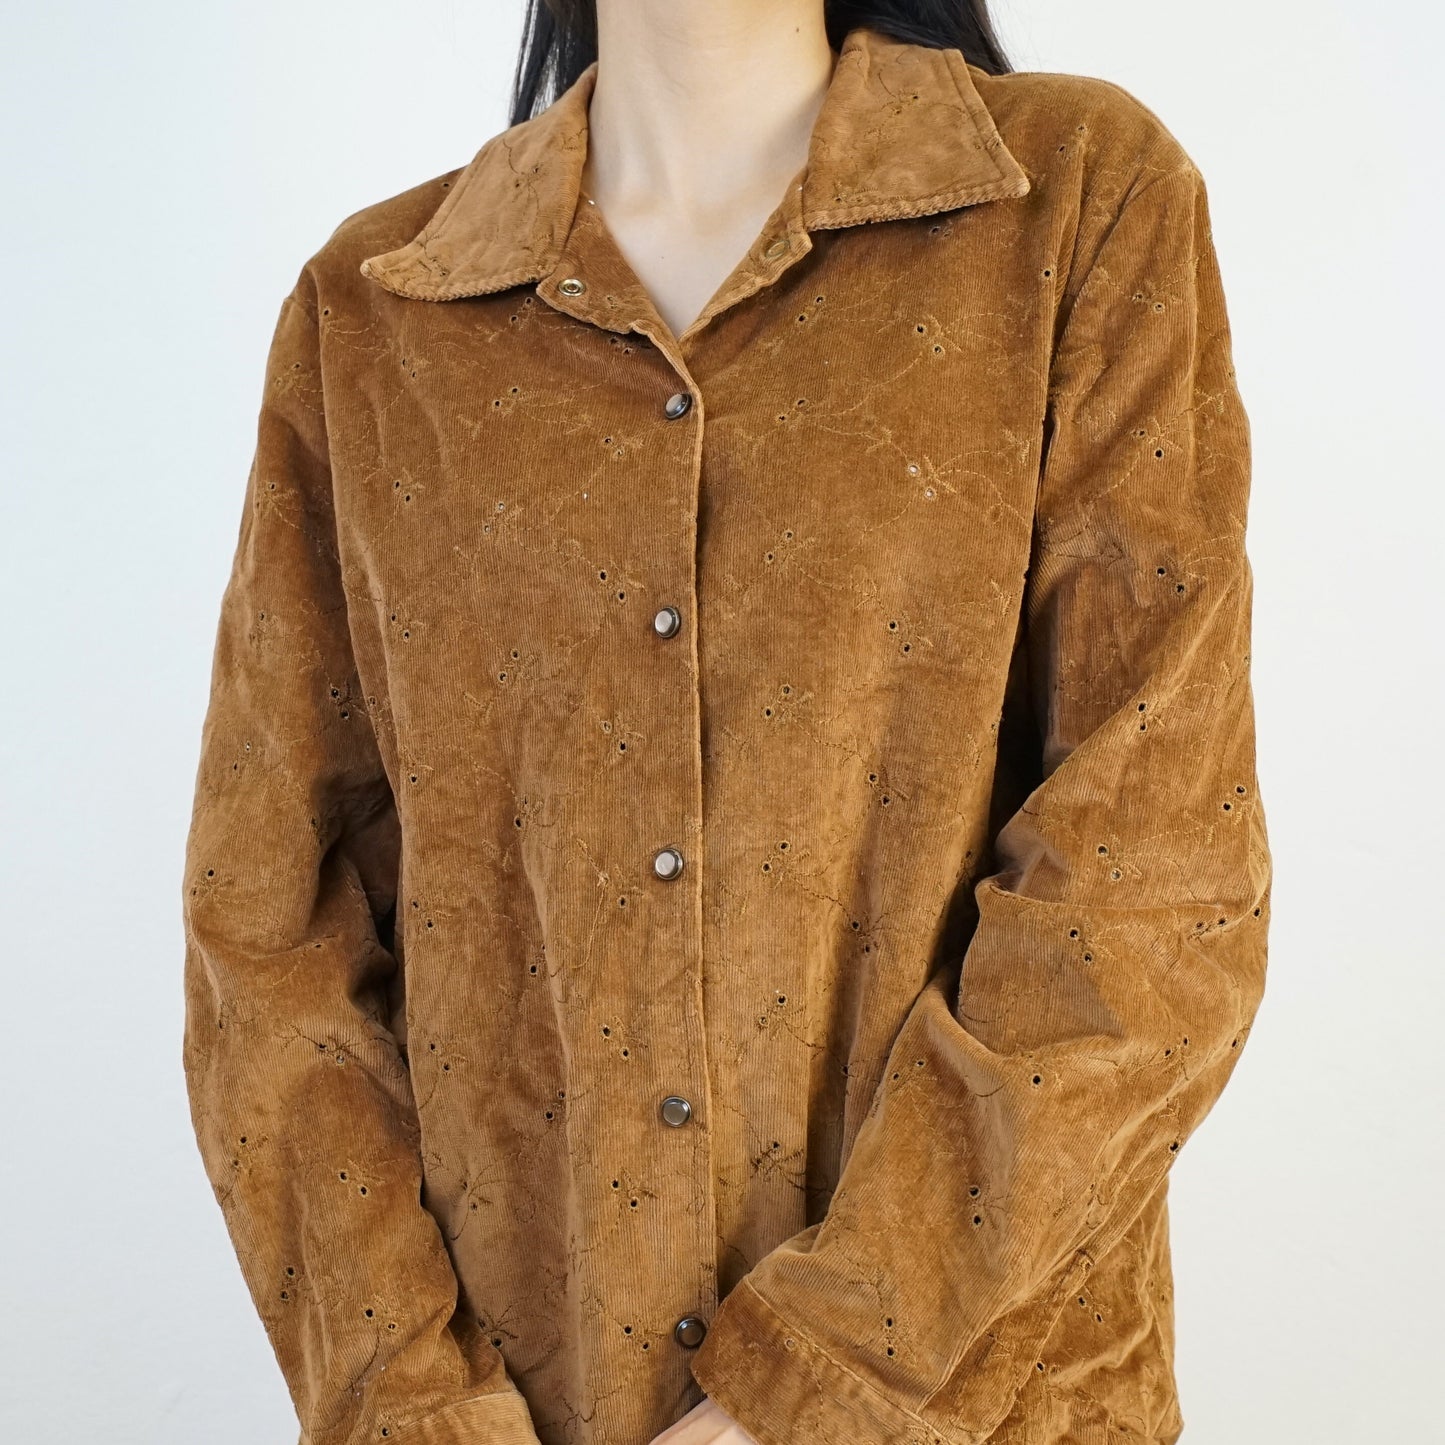 Vintage Corduroy Shirt size L brown